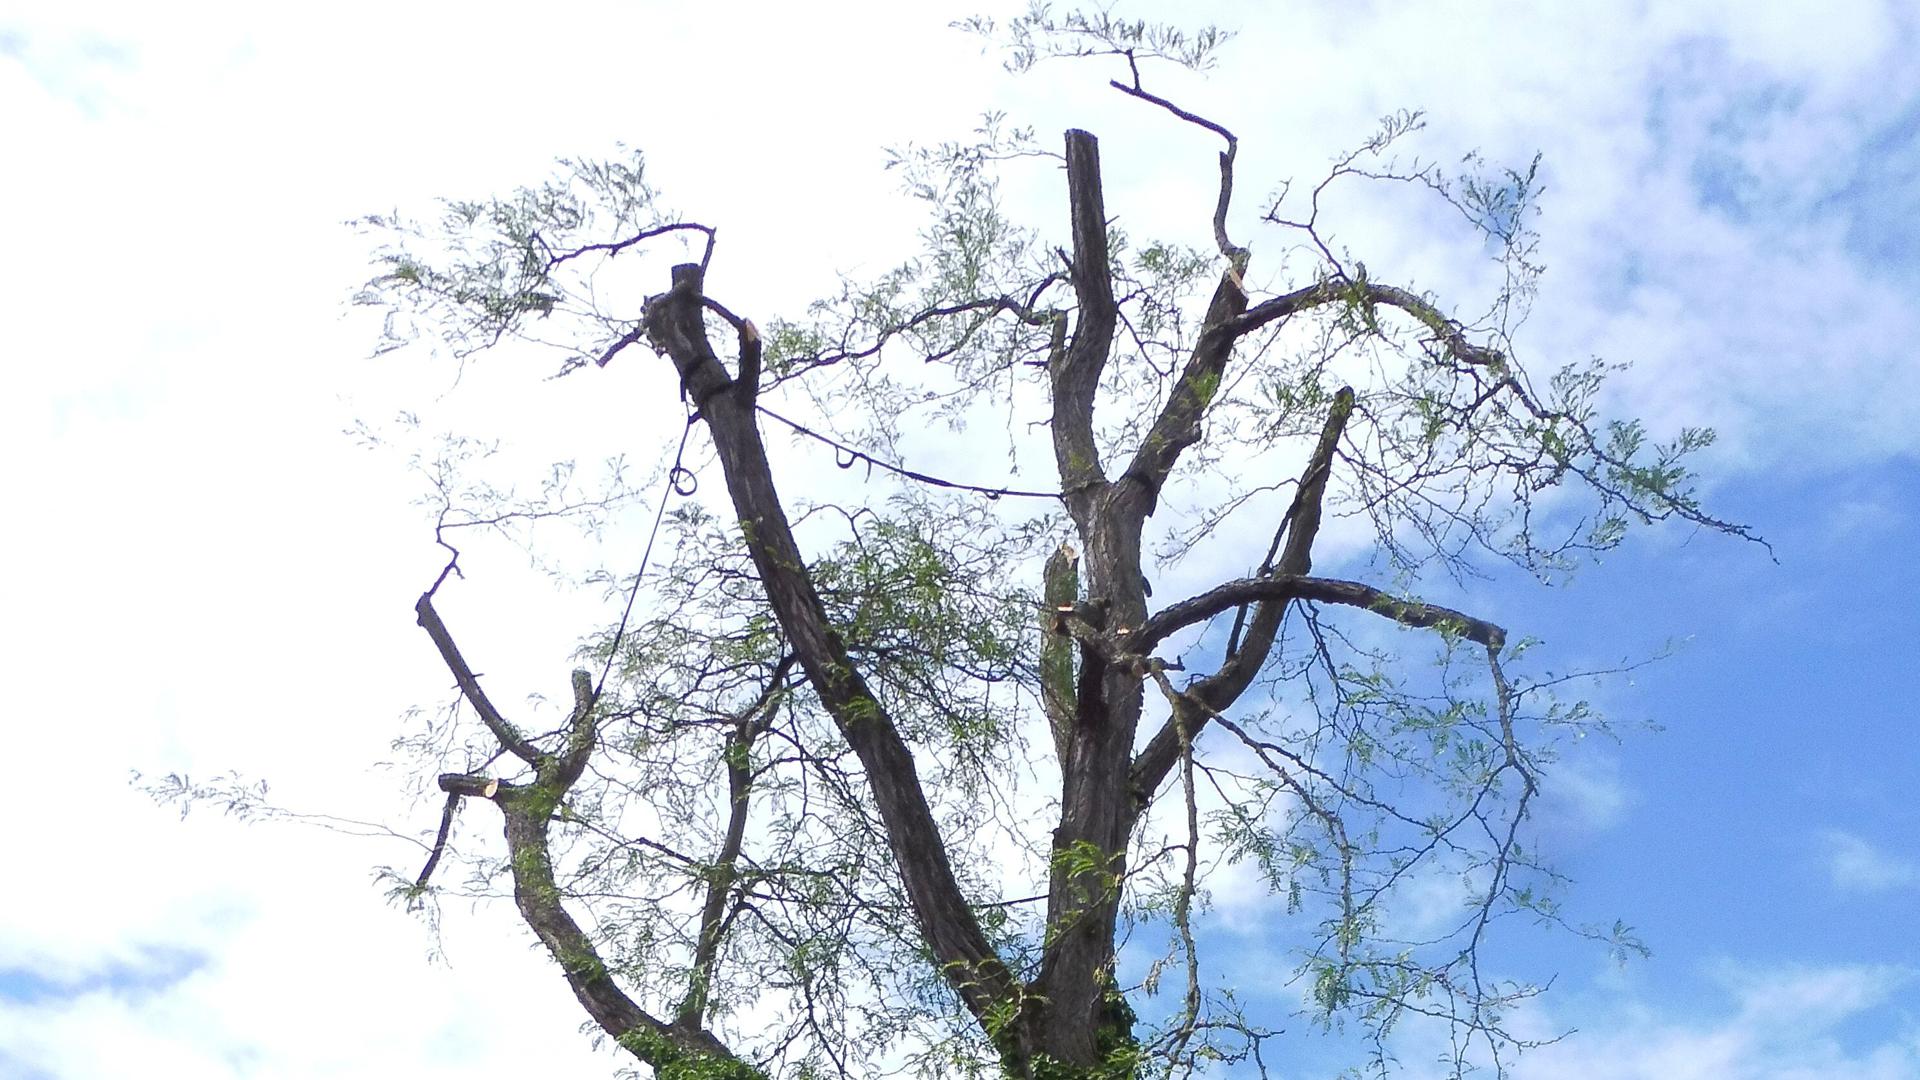 Der Lederhülsenbaum auf der Verkehrsinsel Oechsle-, Morse-, Senefelderstraße bot bei rund 20 Metern Höhe eine mächtige Krone. Diese musste eingekürzt werden, bevor der Baum gefällt wird.